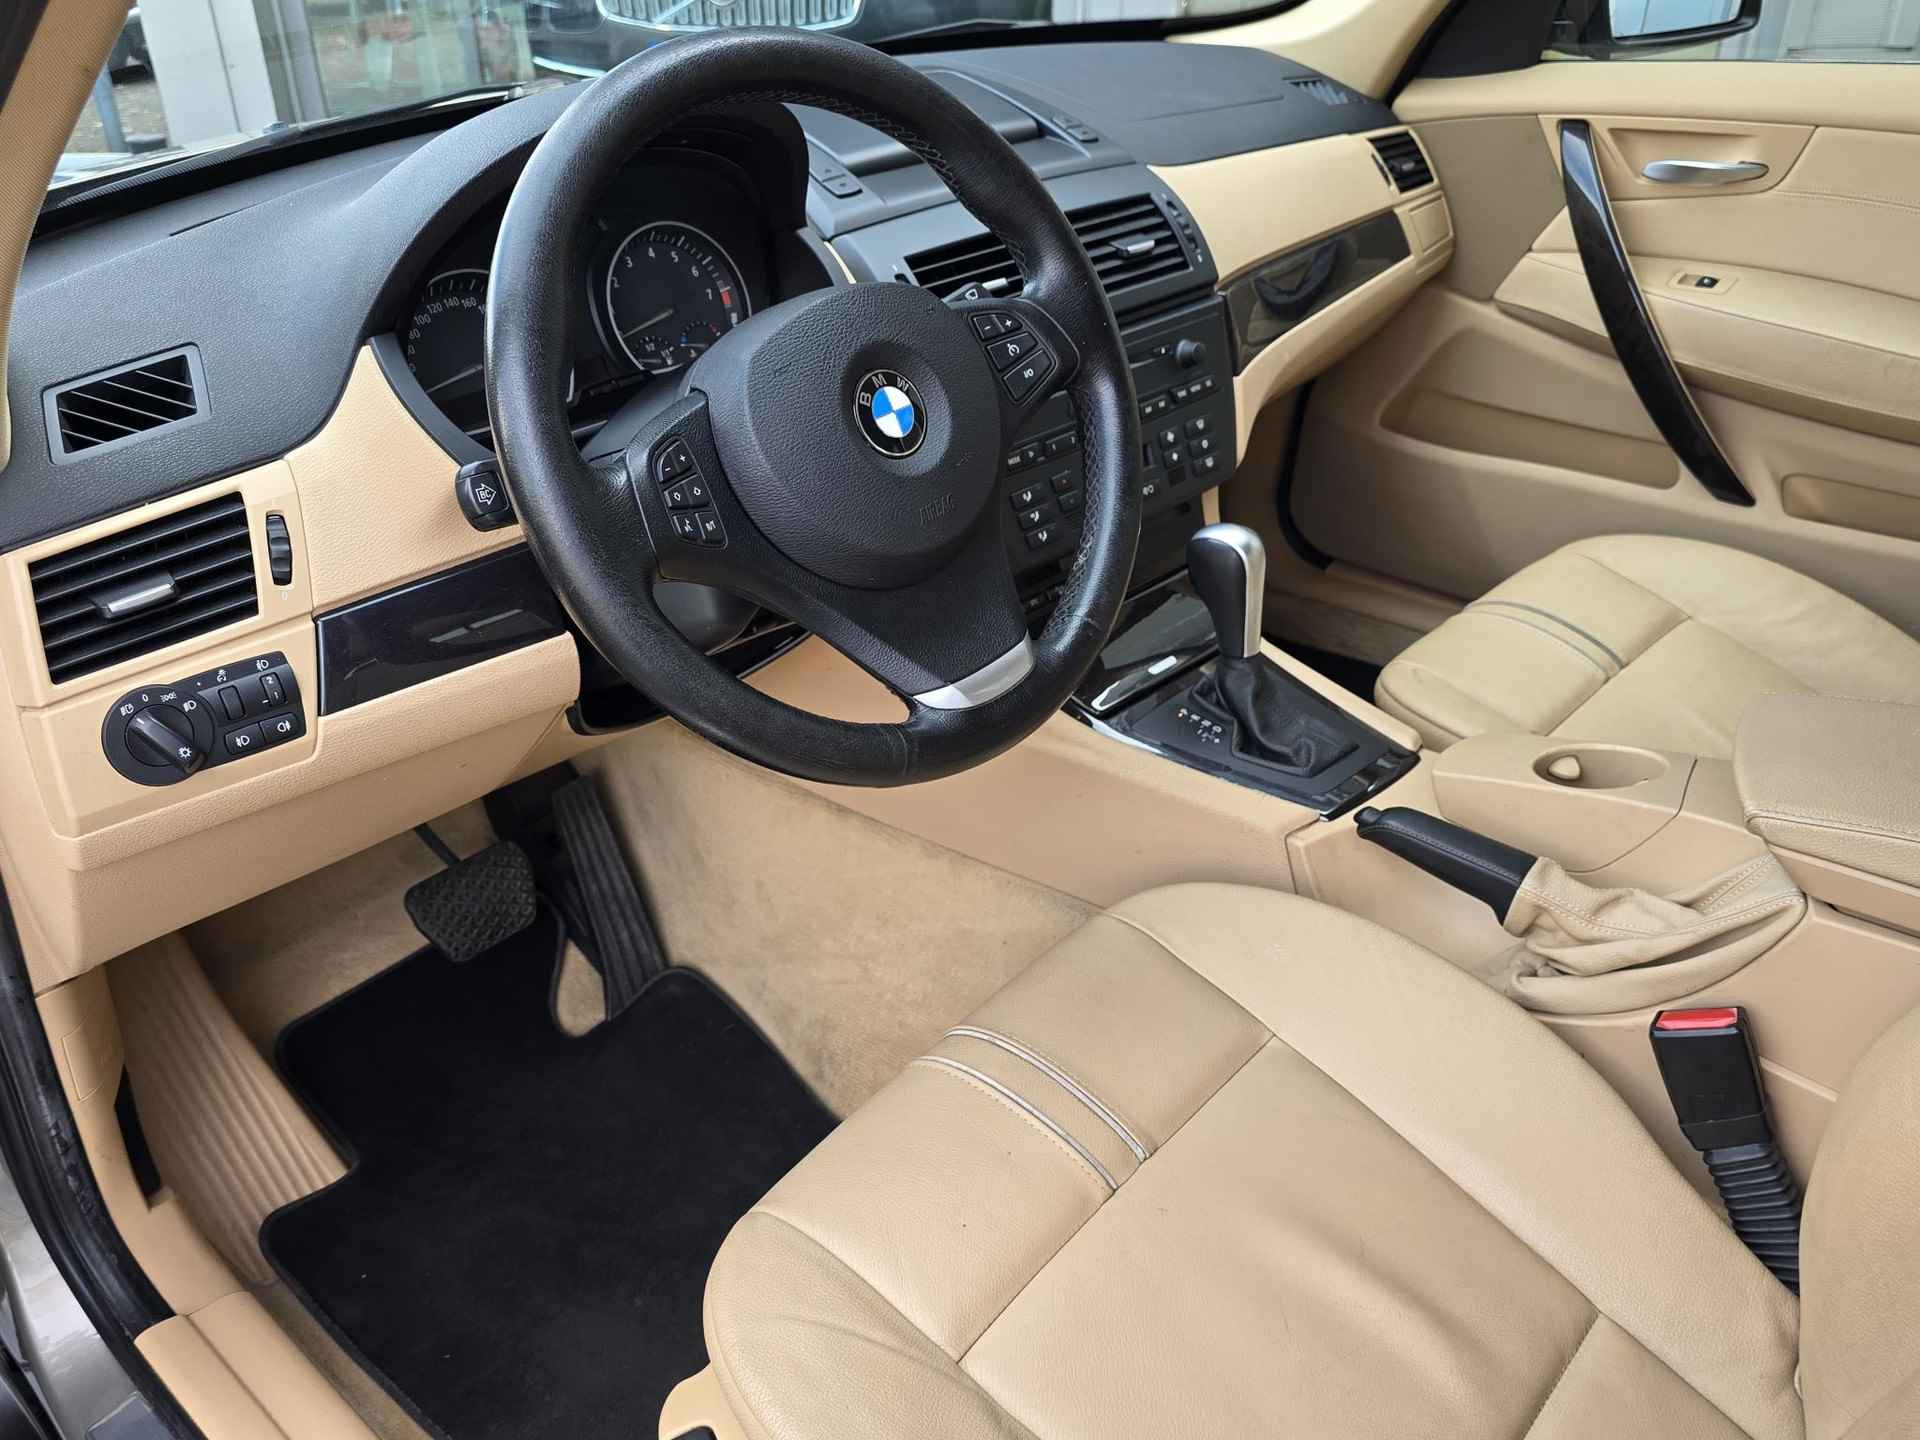 BMW X3 2.5si Executive "Youngtimer" - 7/52